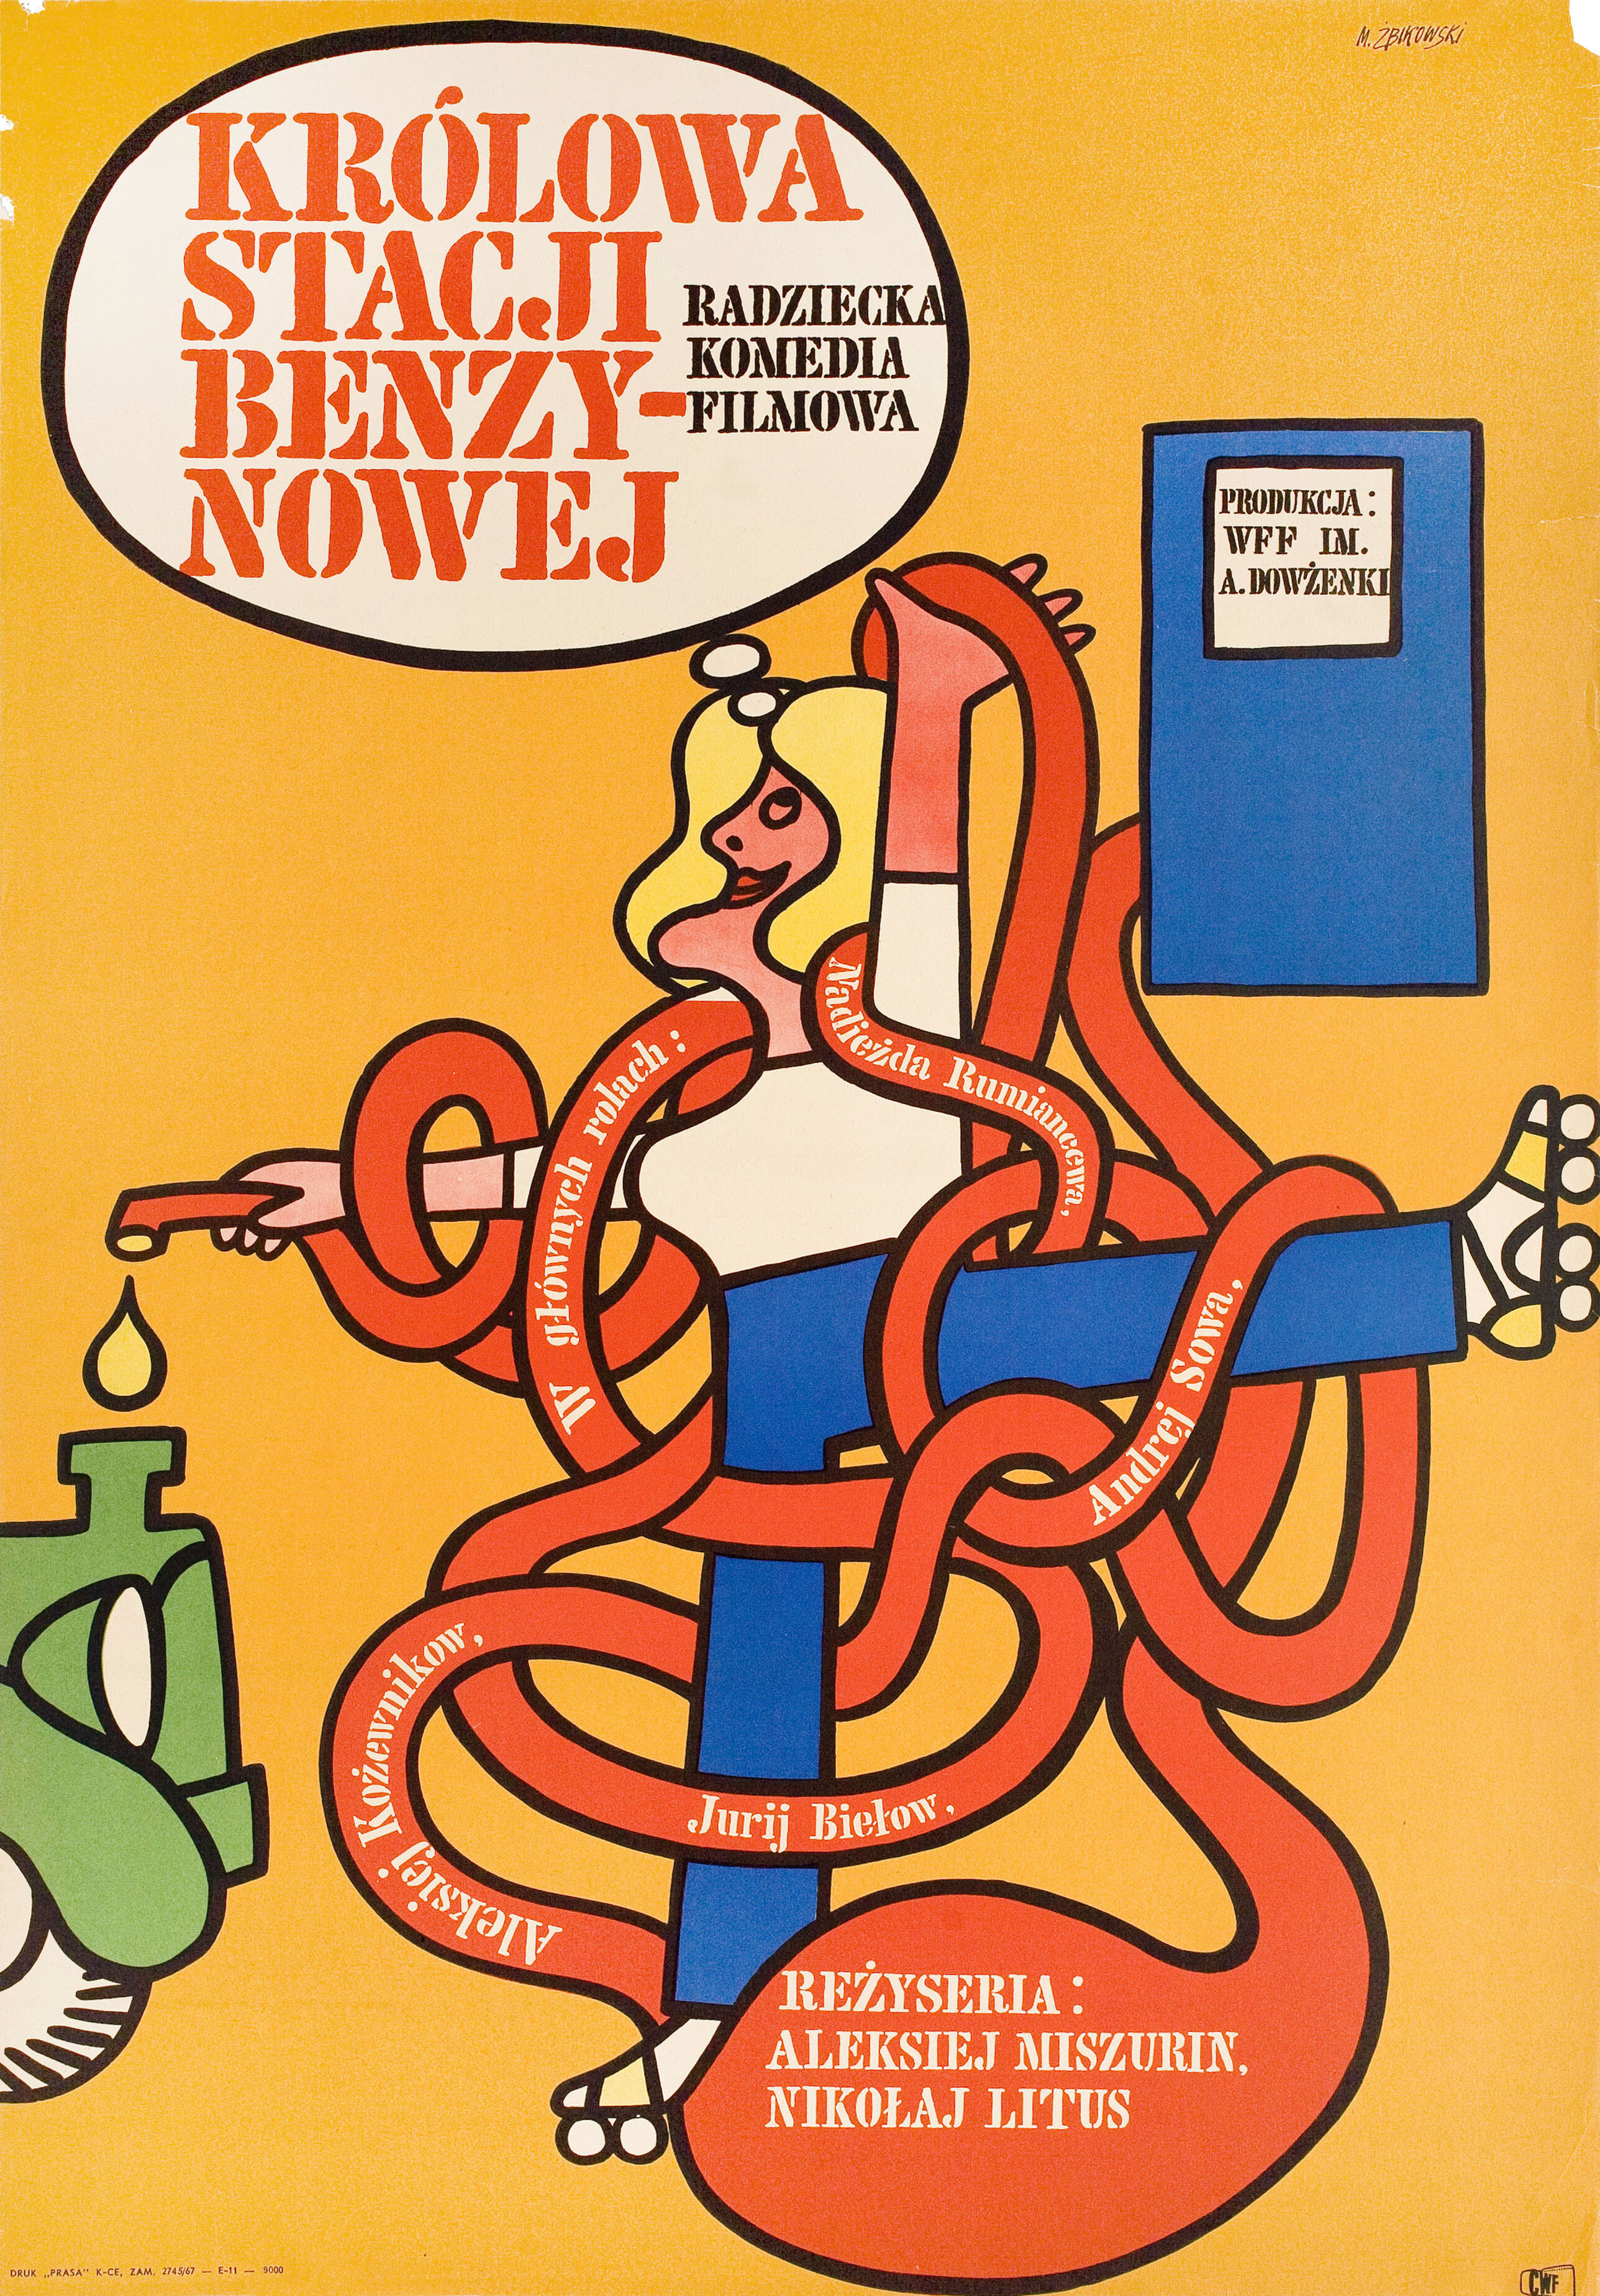 Королева бензоколонки (режиссёр Николай Литусь, 1963), польский постер к фильму, автор Мацей Збиковски, 1967 год